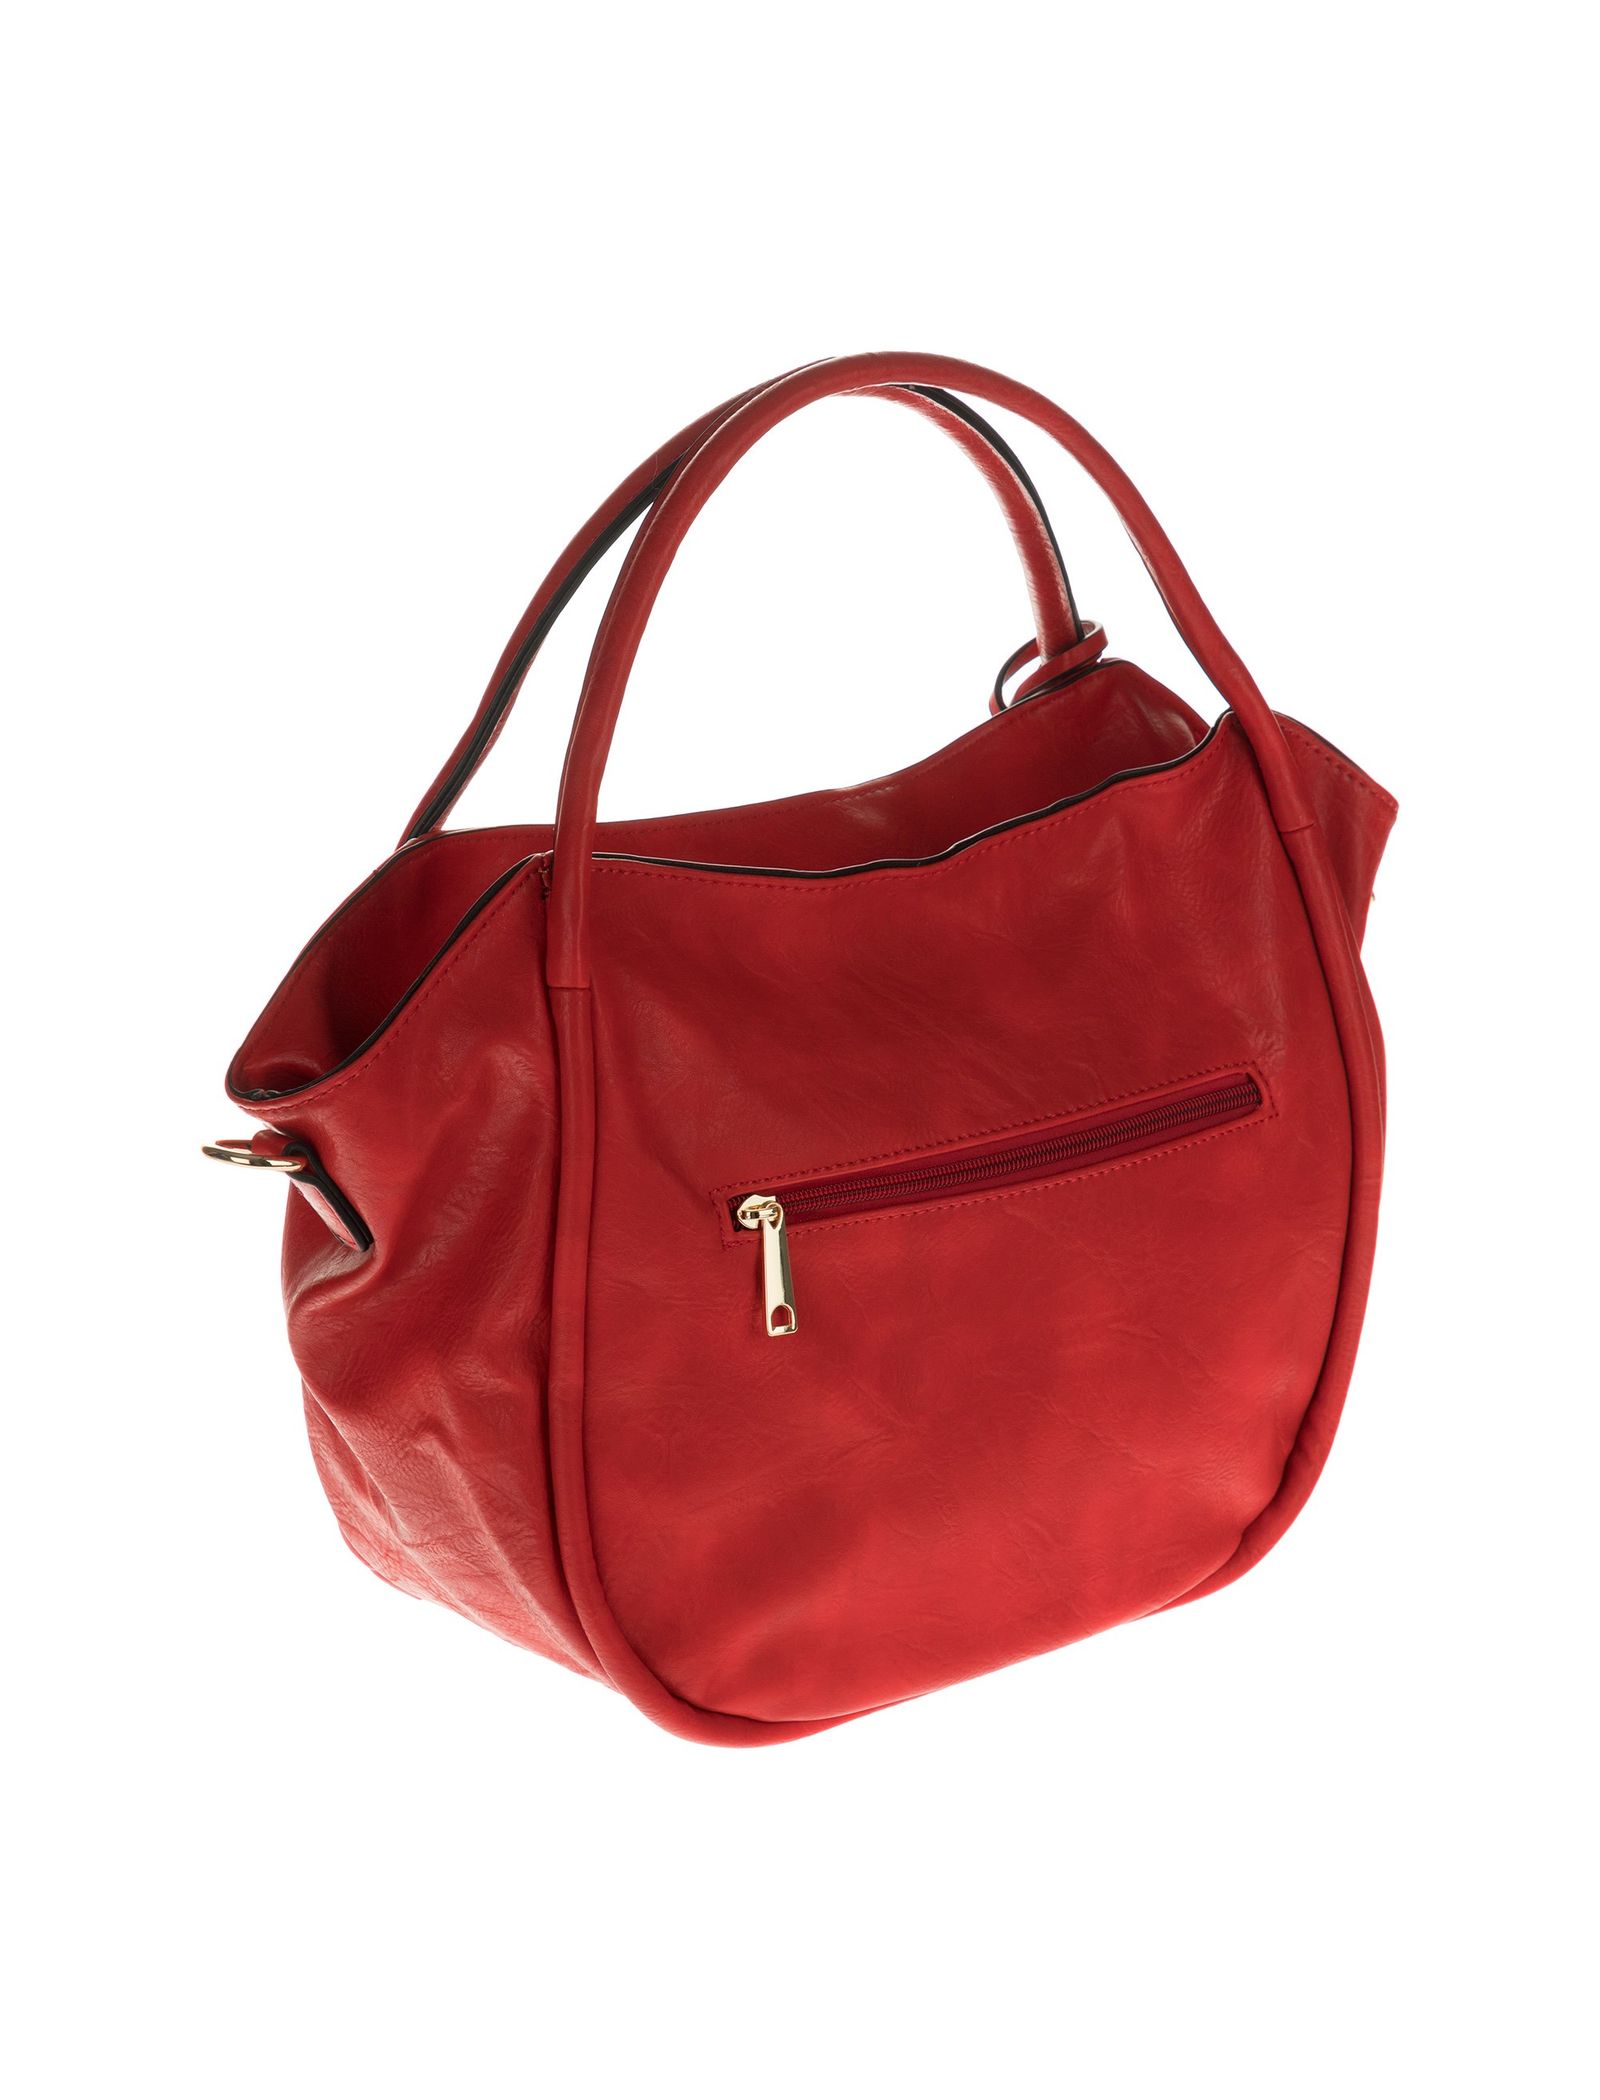 کیف دستی روزمره زنانه - دادلین تک سایز - قرمز  - 5